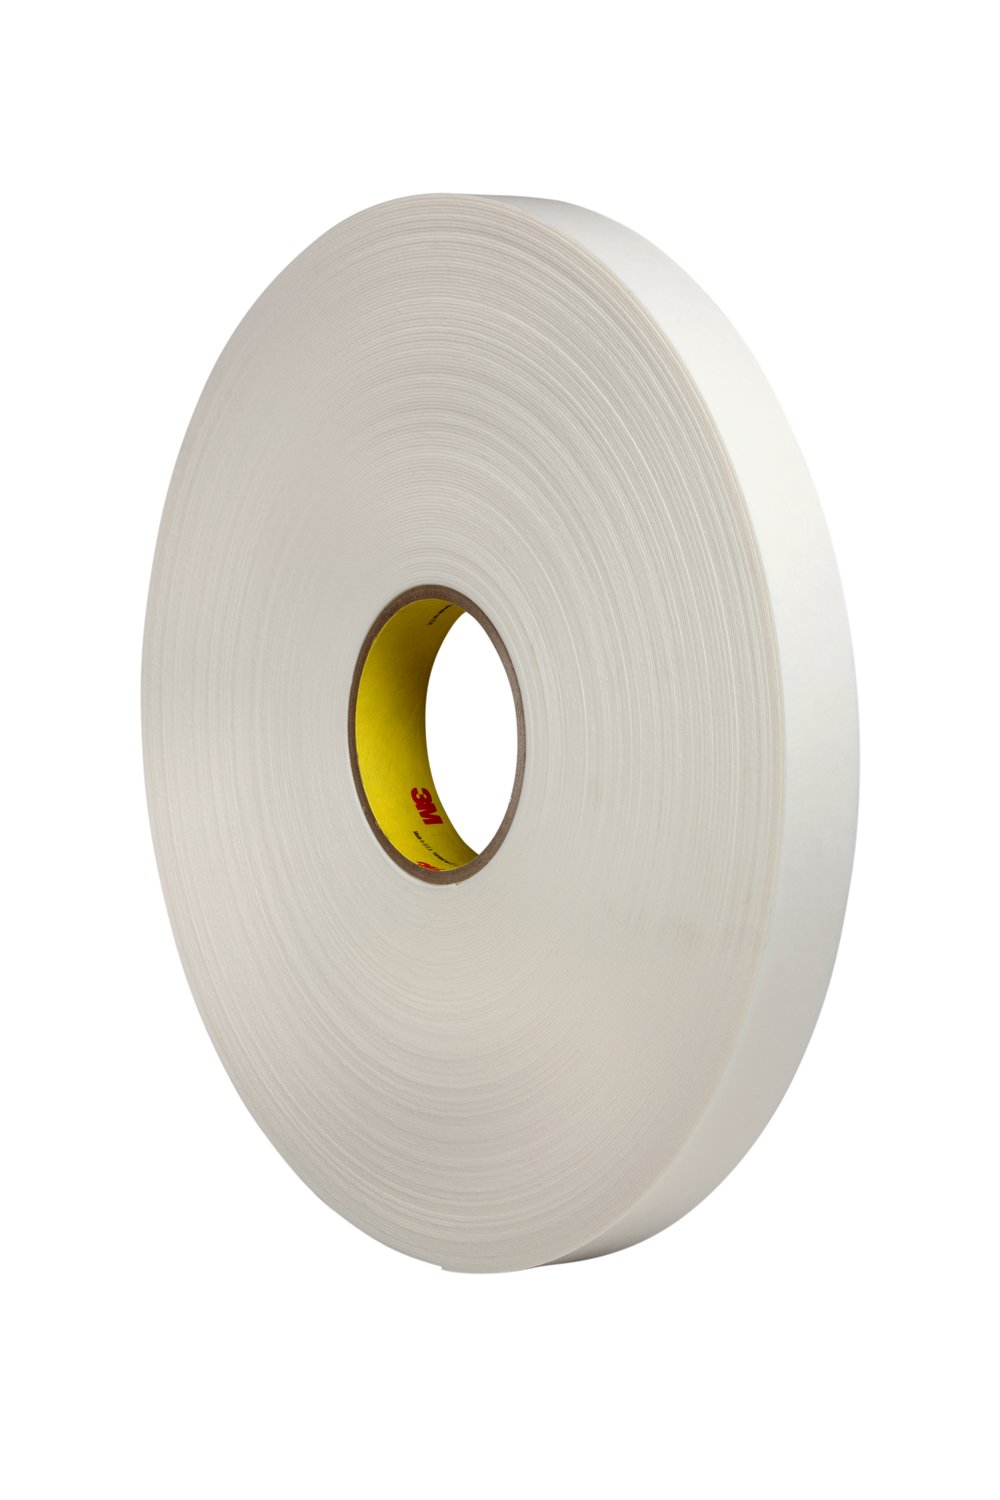 7100050508 - 3M Double Coated Polyethylene Foam Tape 4462, White, 48 in x 72 yd, 31
mil, 1 roll per case